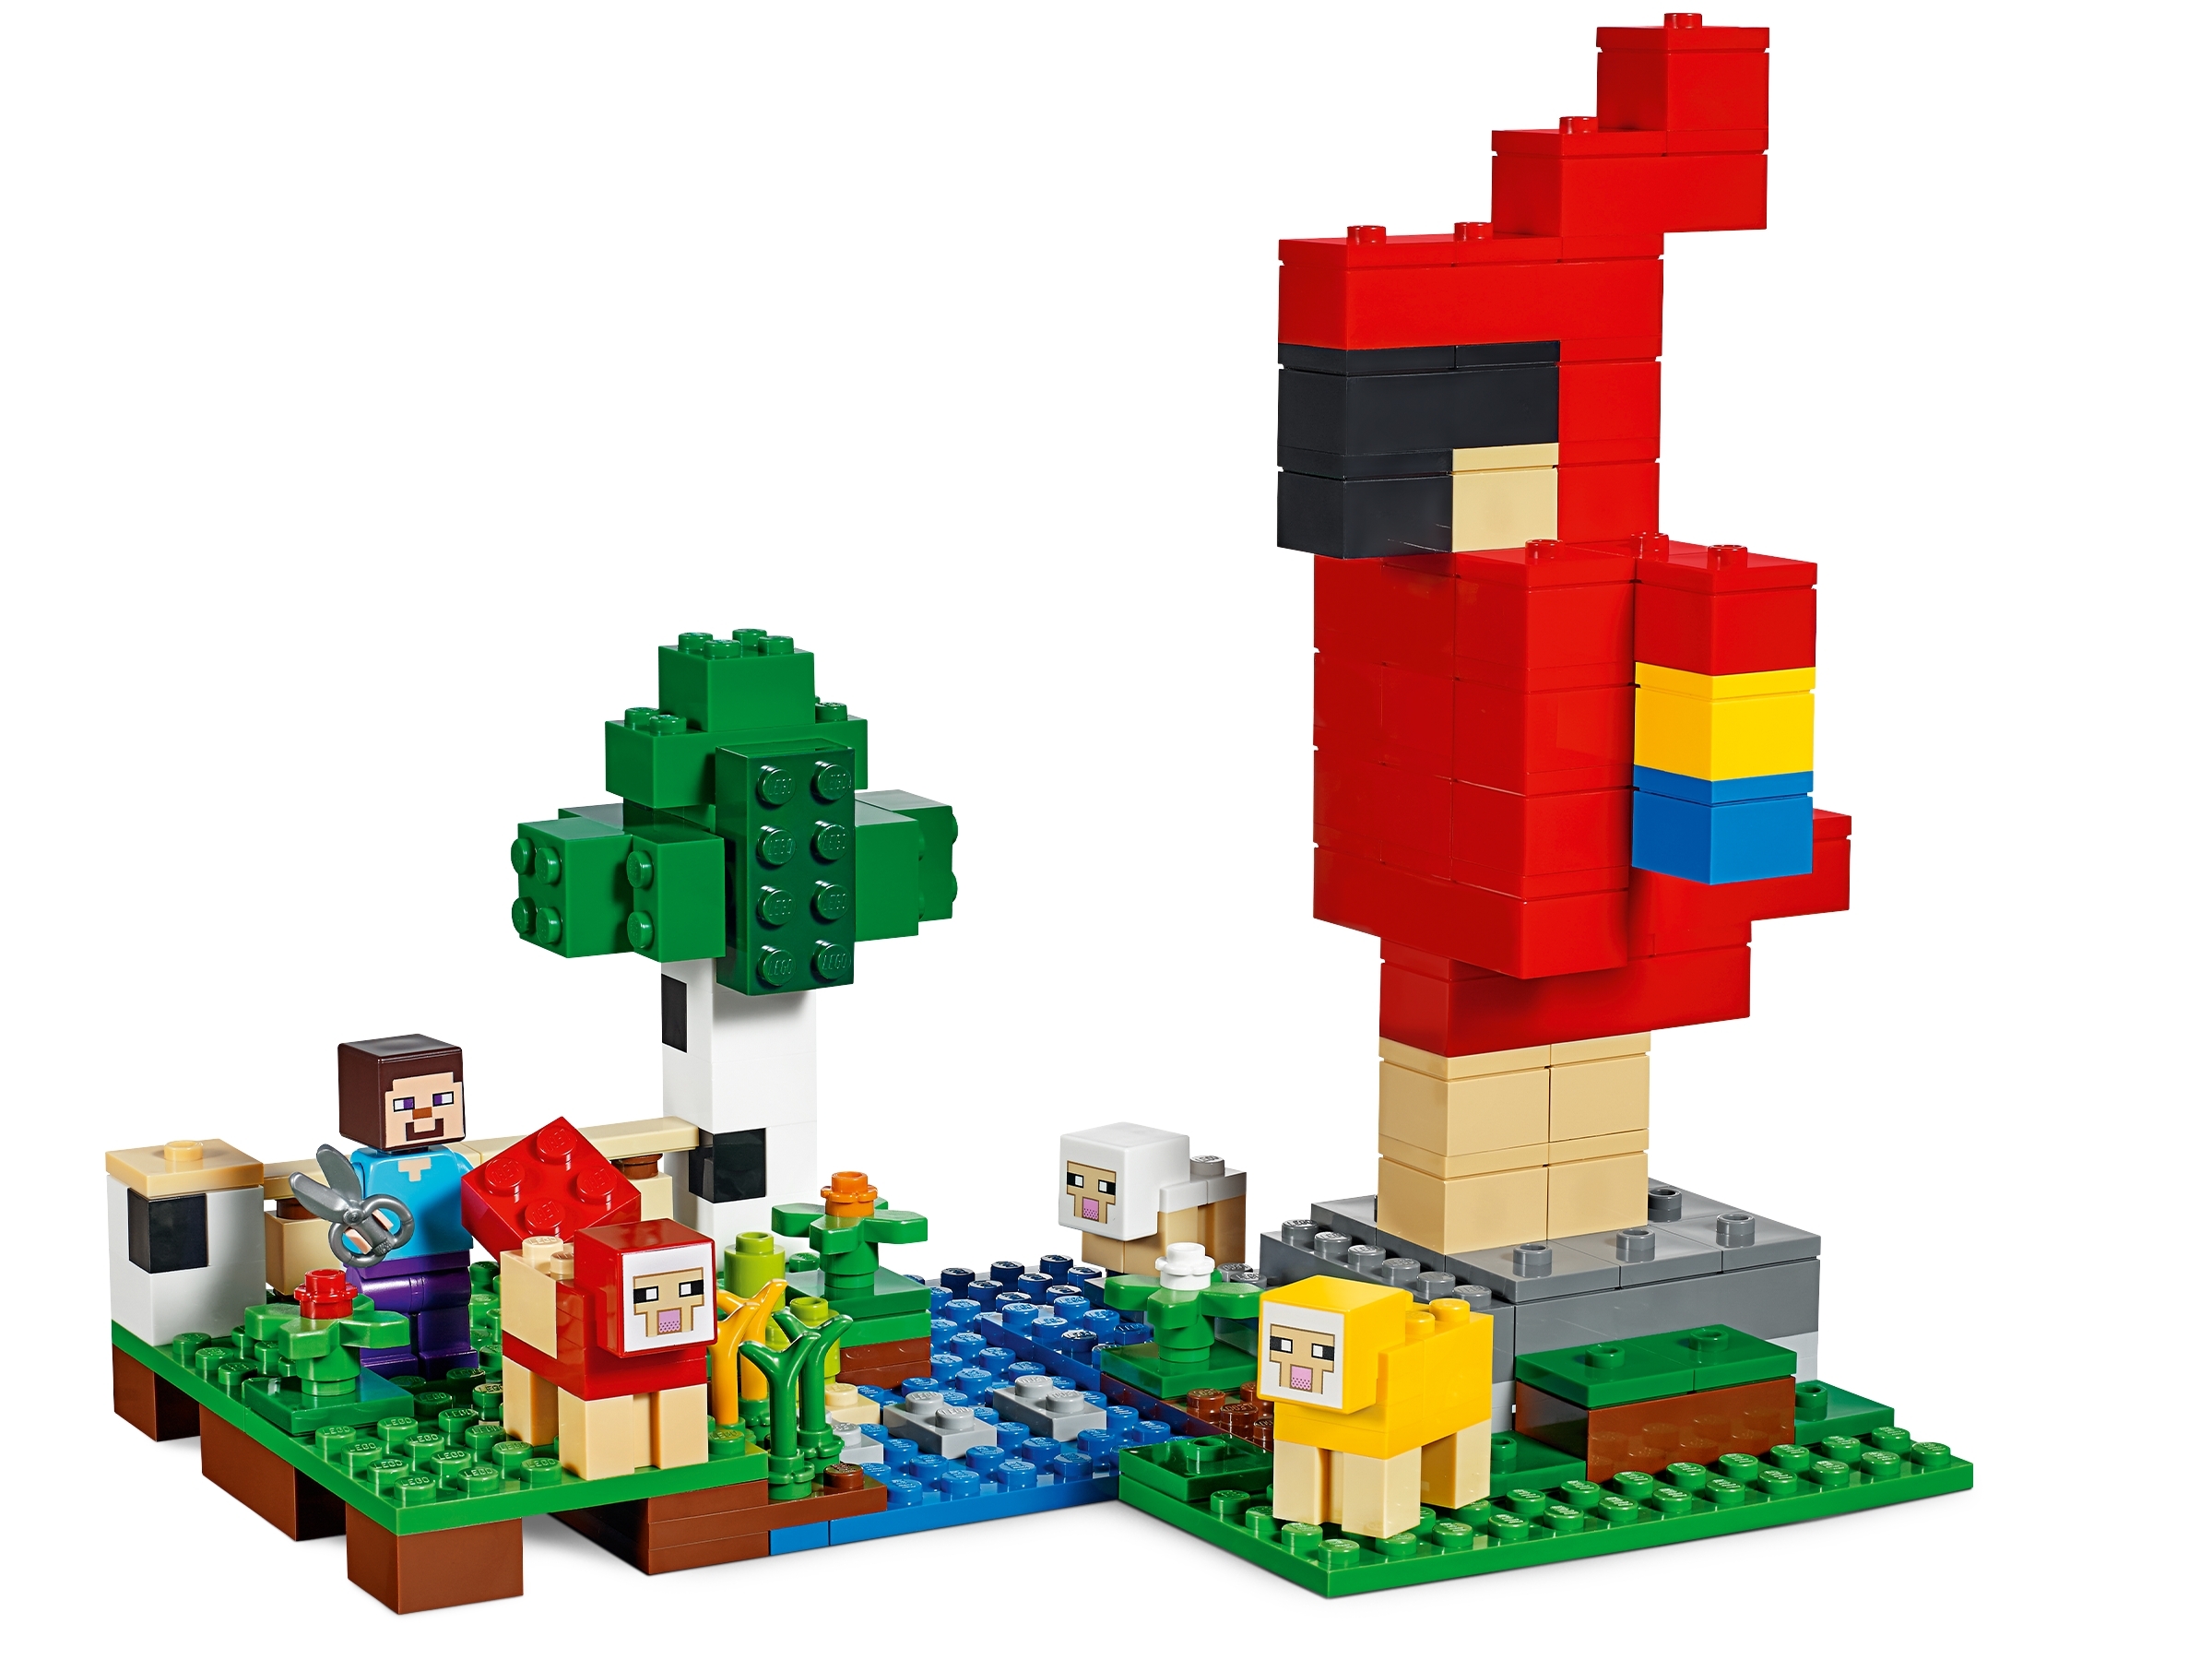 Roblox, Lego, Lego, Lego & Minecraft Witch. : r/toys